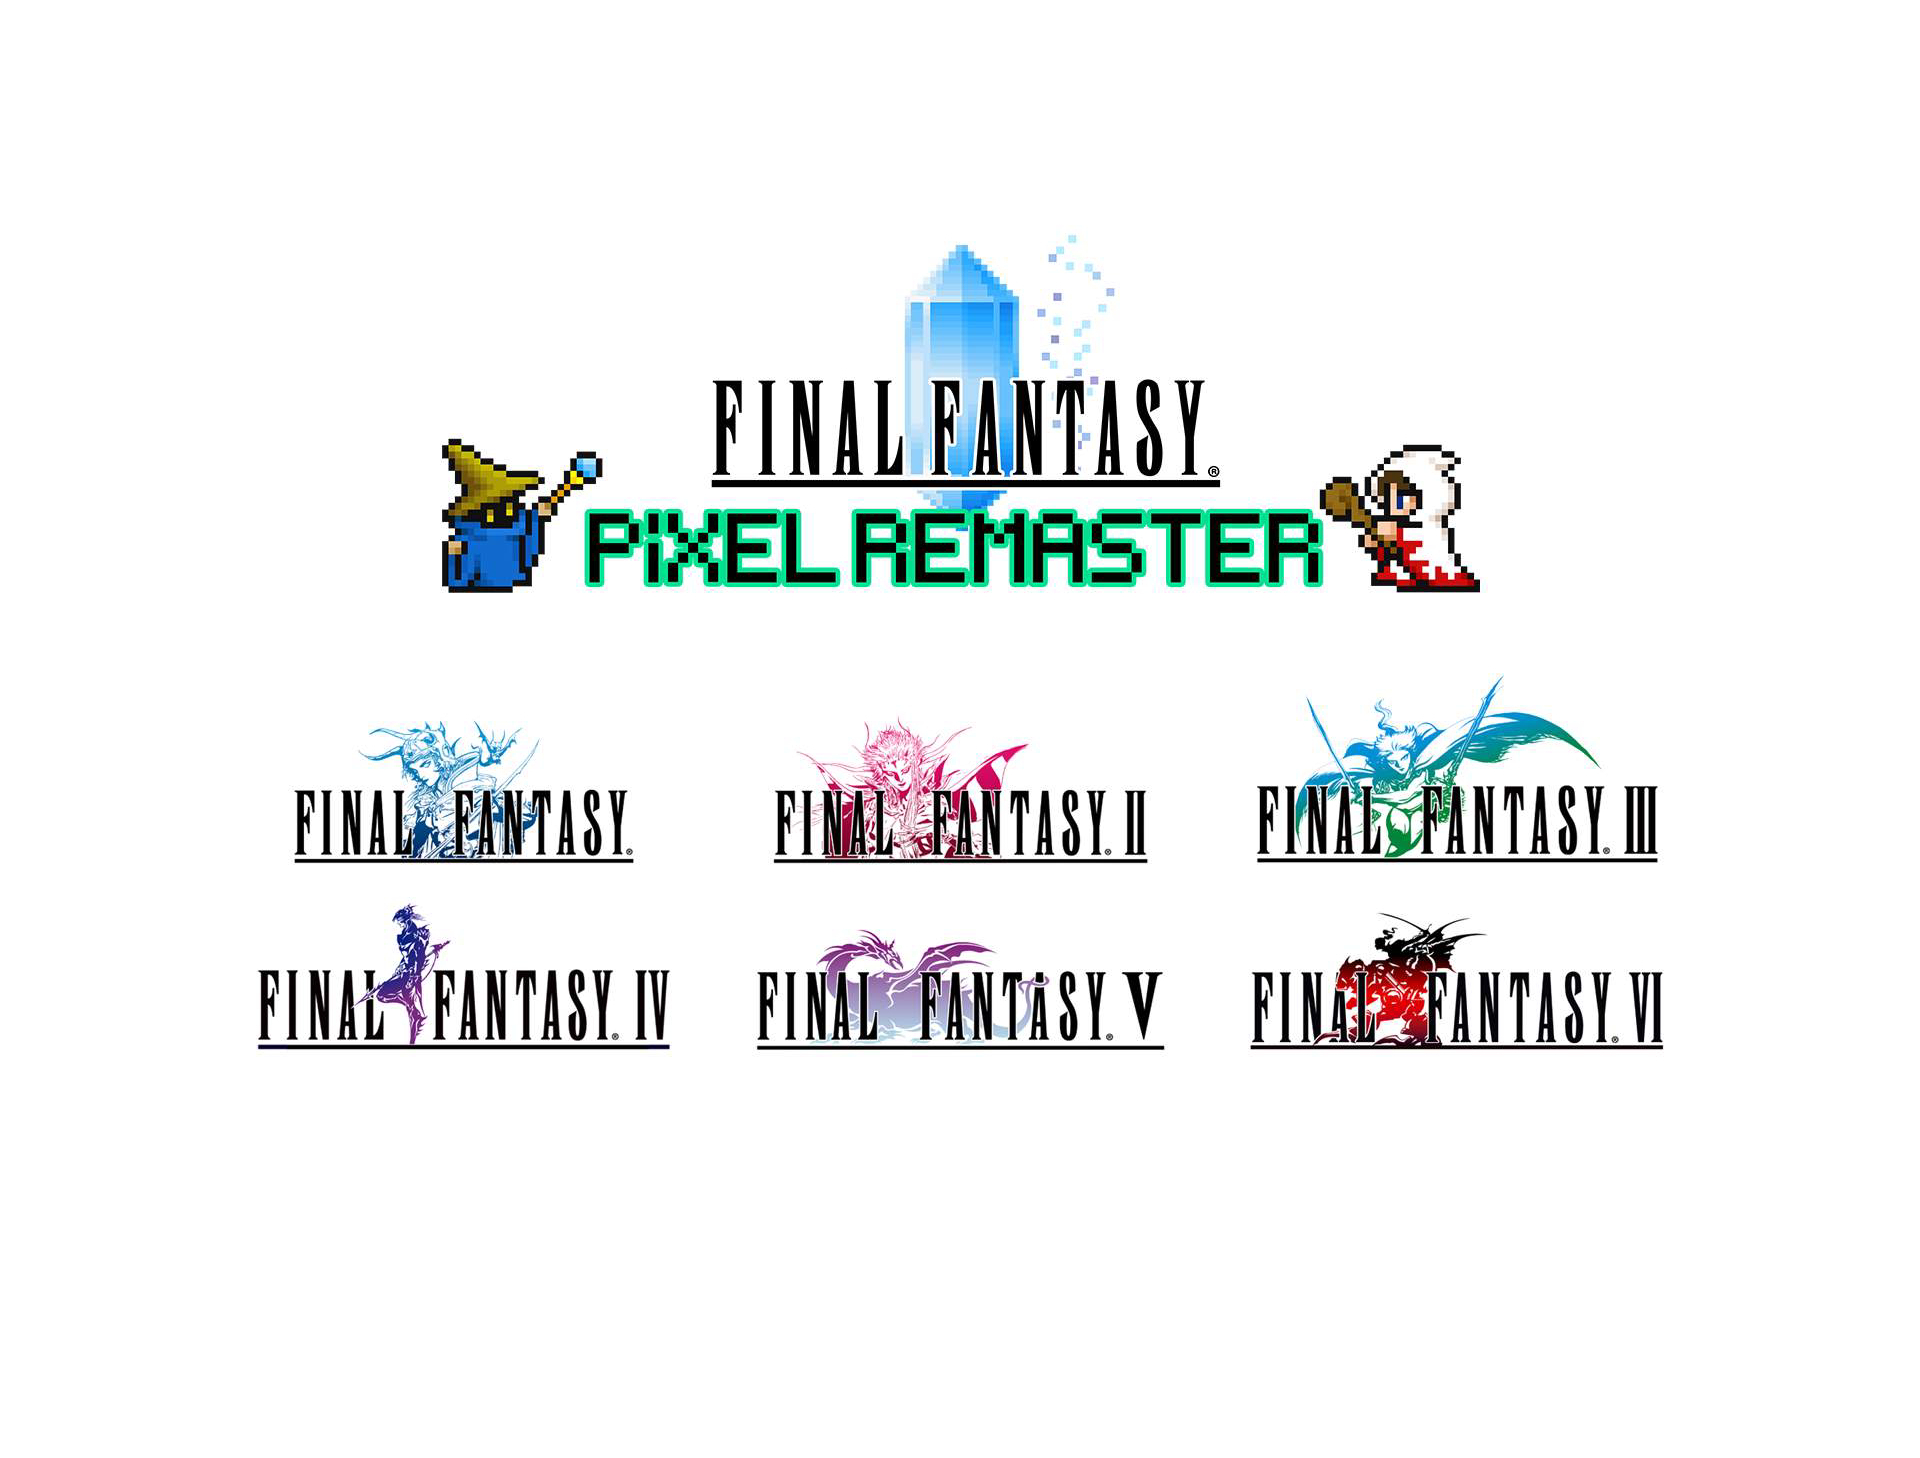 Final Fantasy Pixel Remaster para PS4 y Switch llega en primavera